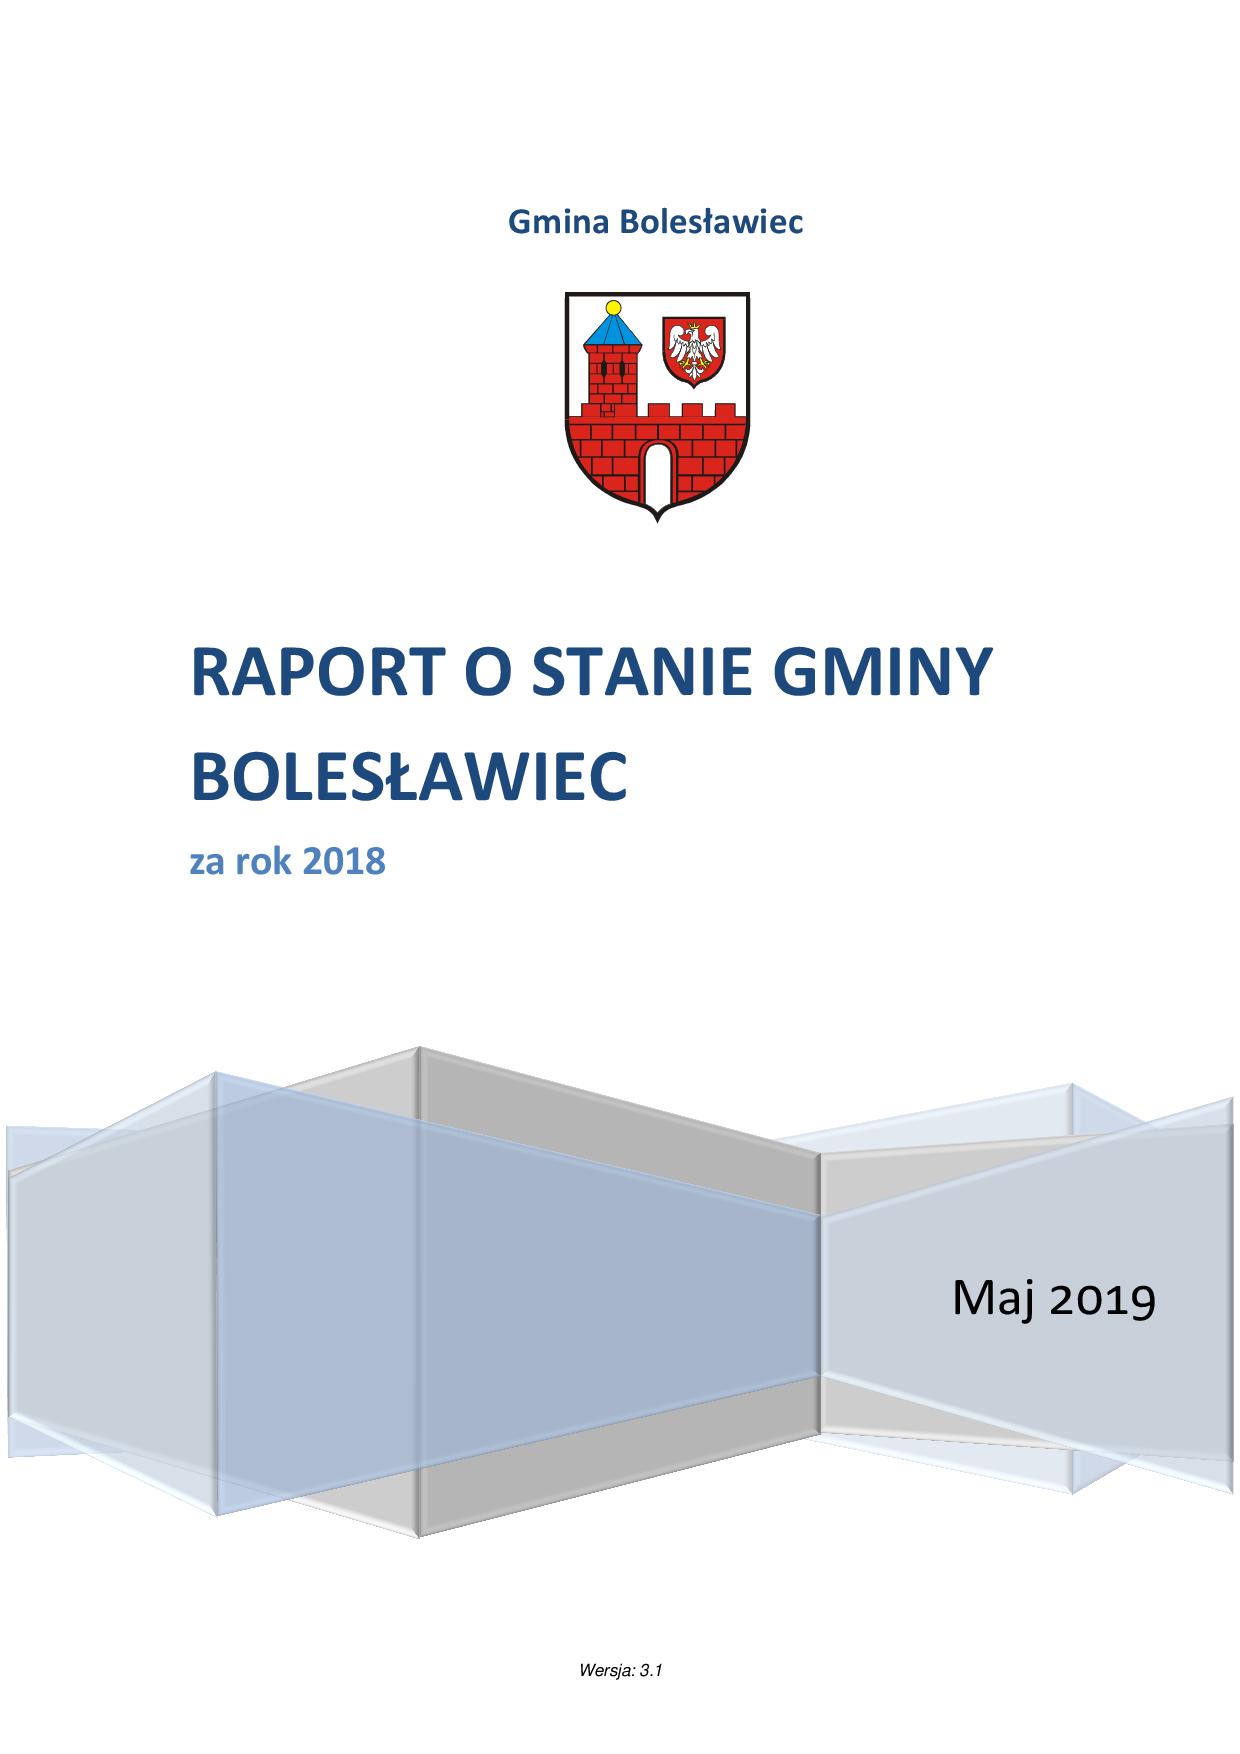  1str-raport_o_stanie_gminy_za_rok_2018-v3.1.jpg